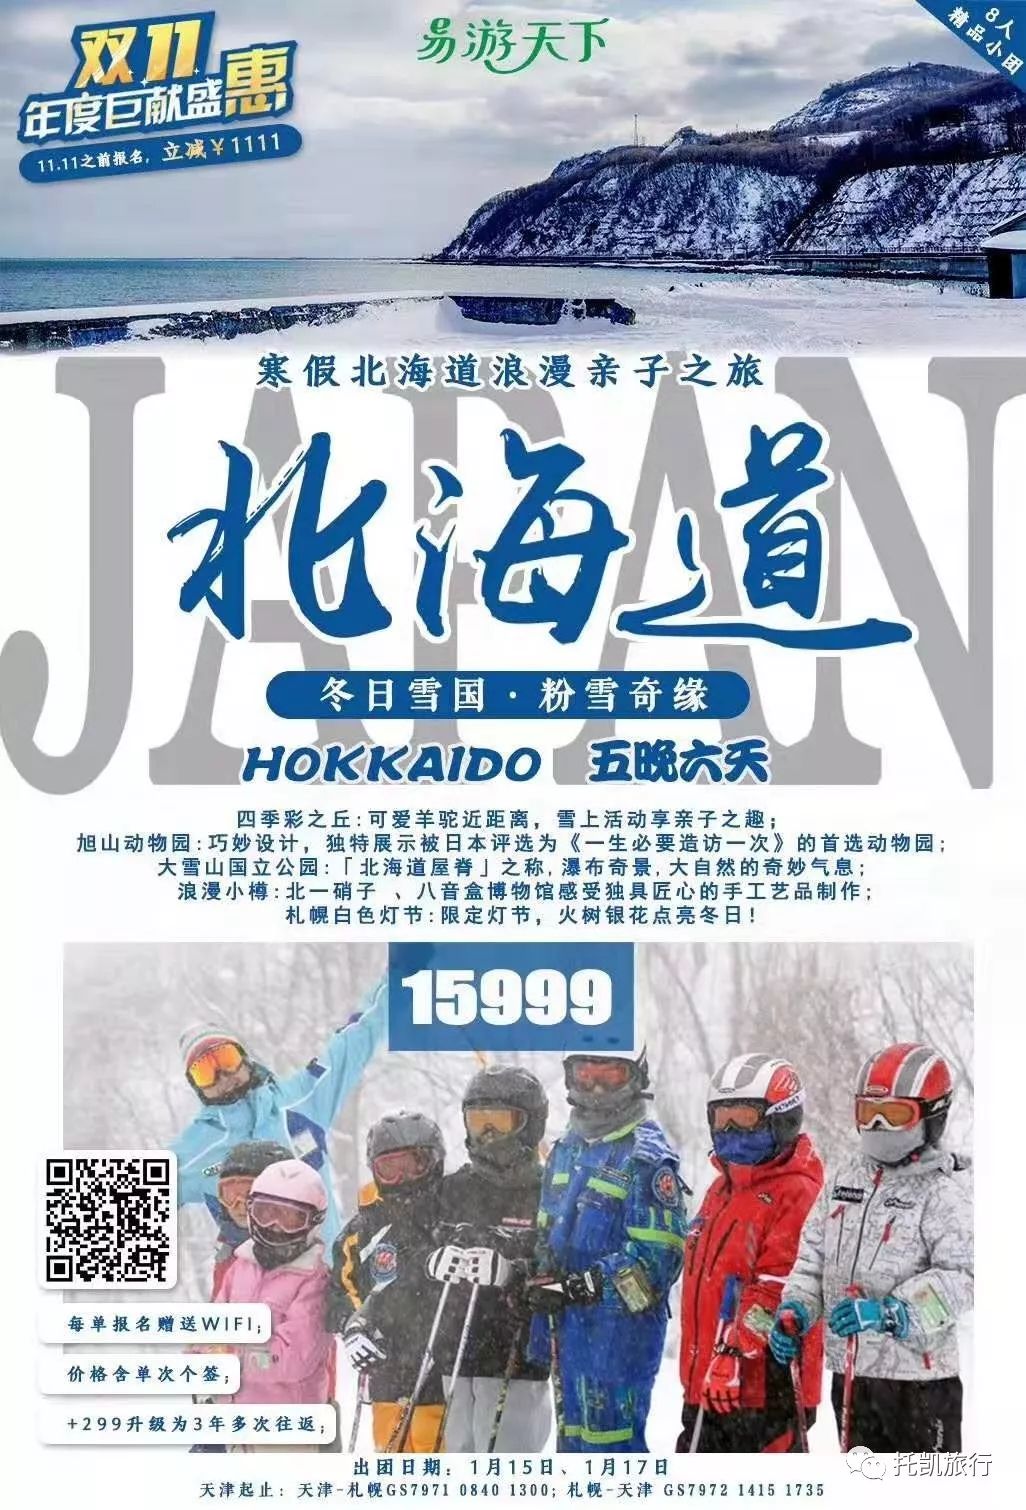 北海道寒假亲子滑雪8人vip小团 托凯旅行 微信公众号文章阅读 Wemp